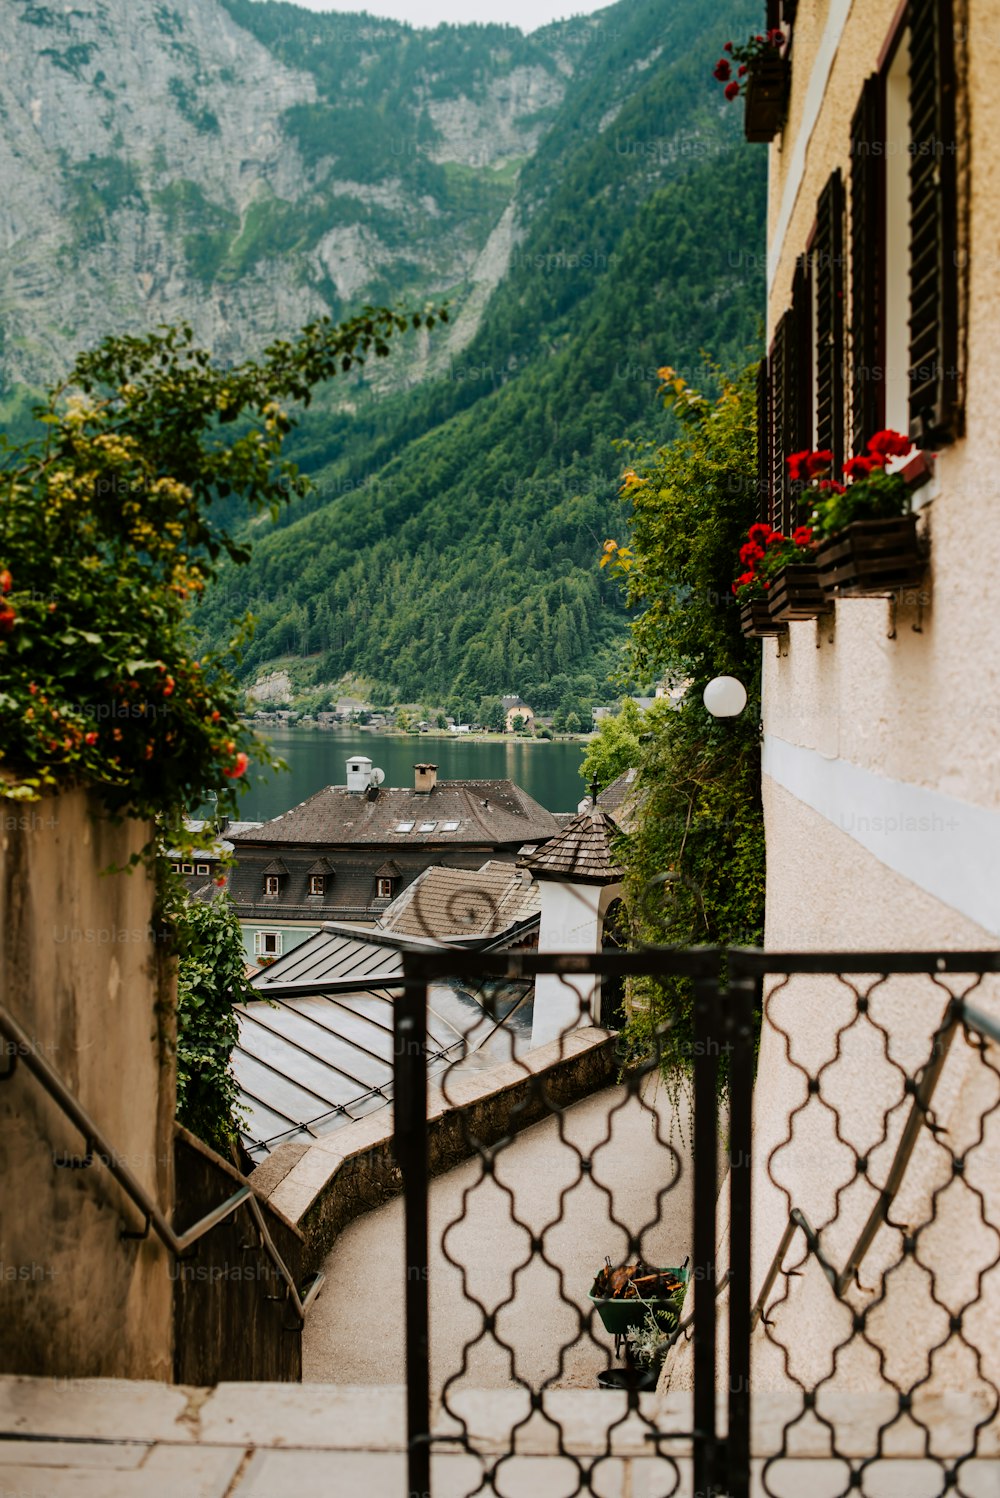 Una vista de un pueblo de montaña desde un balcón